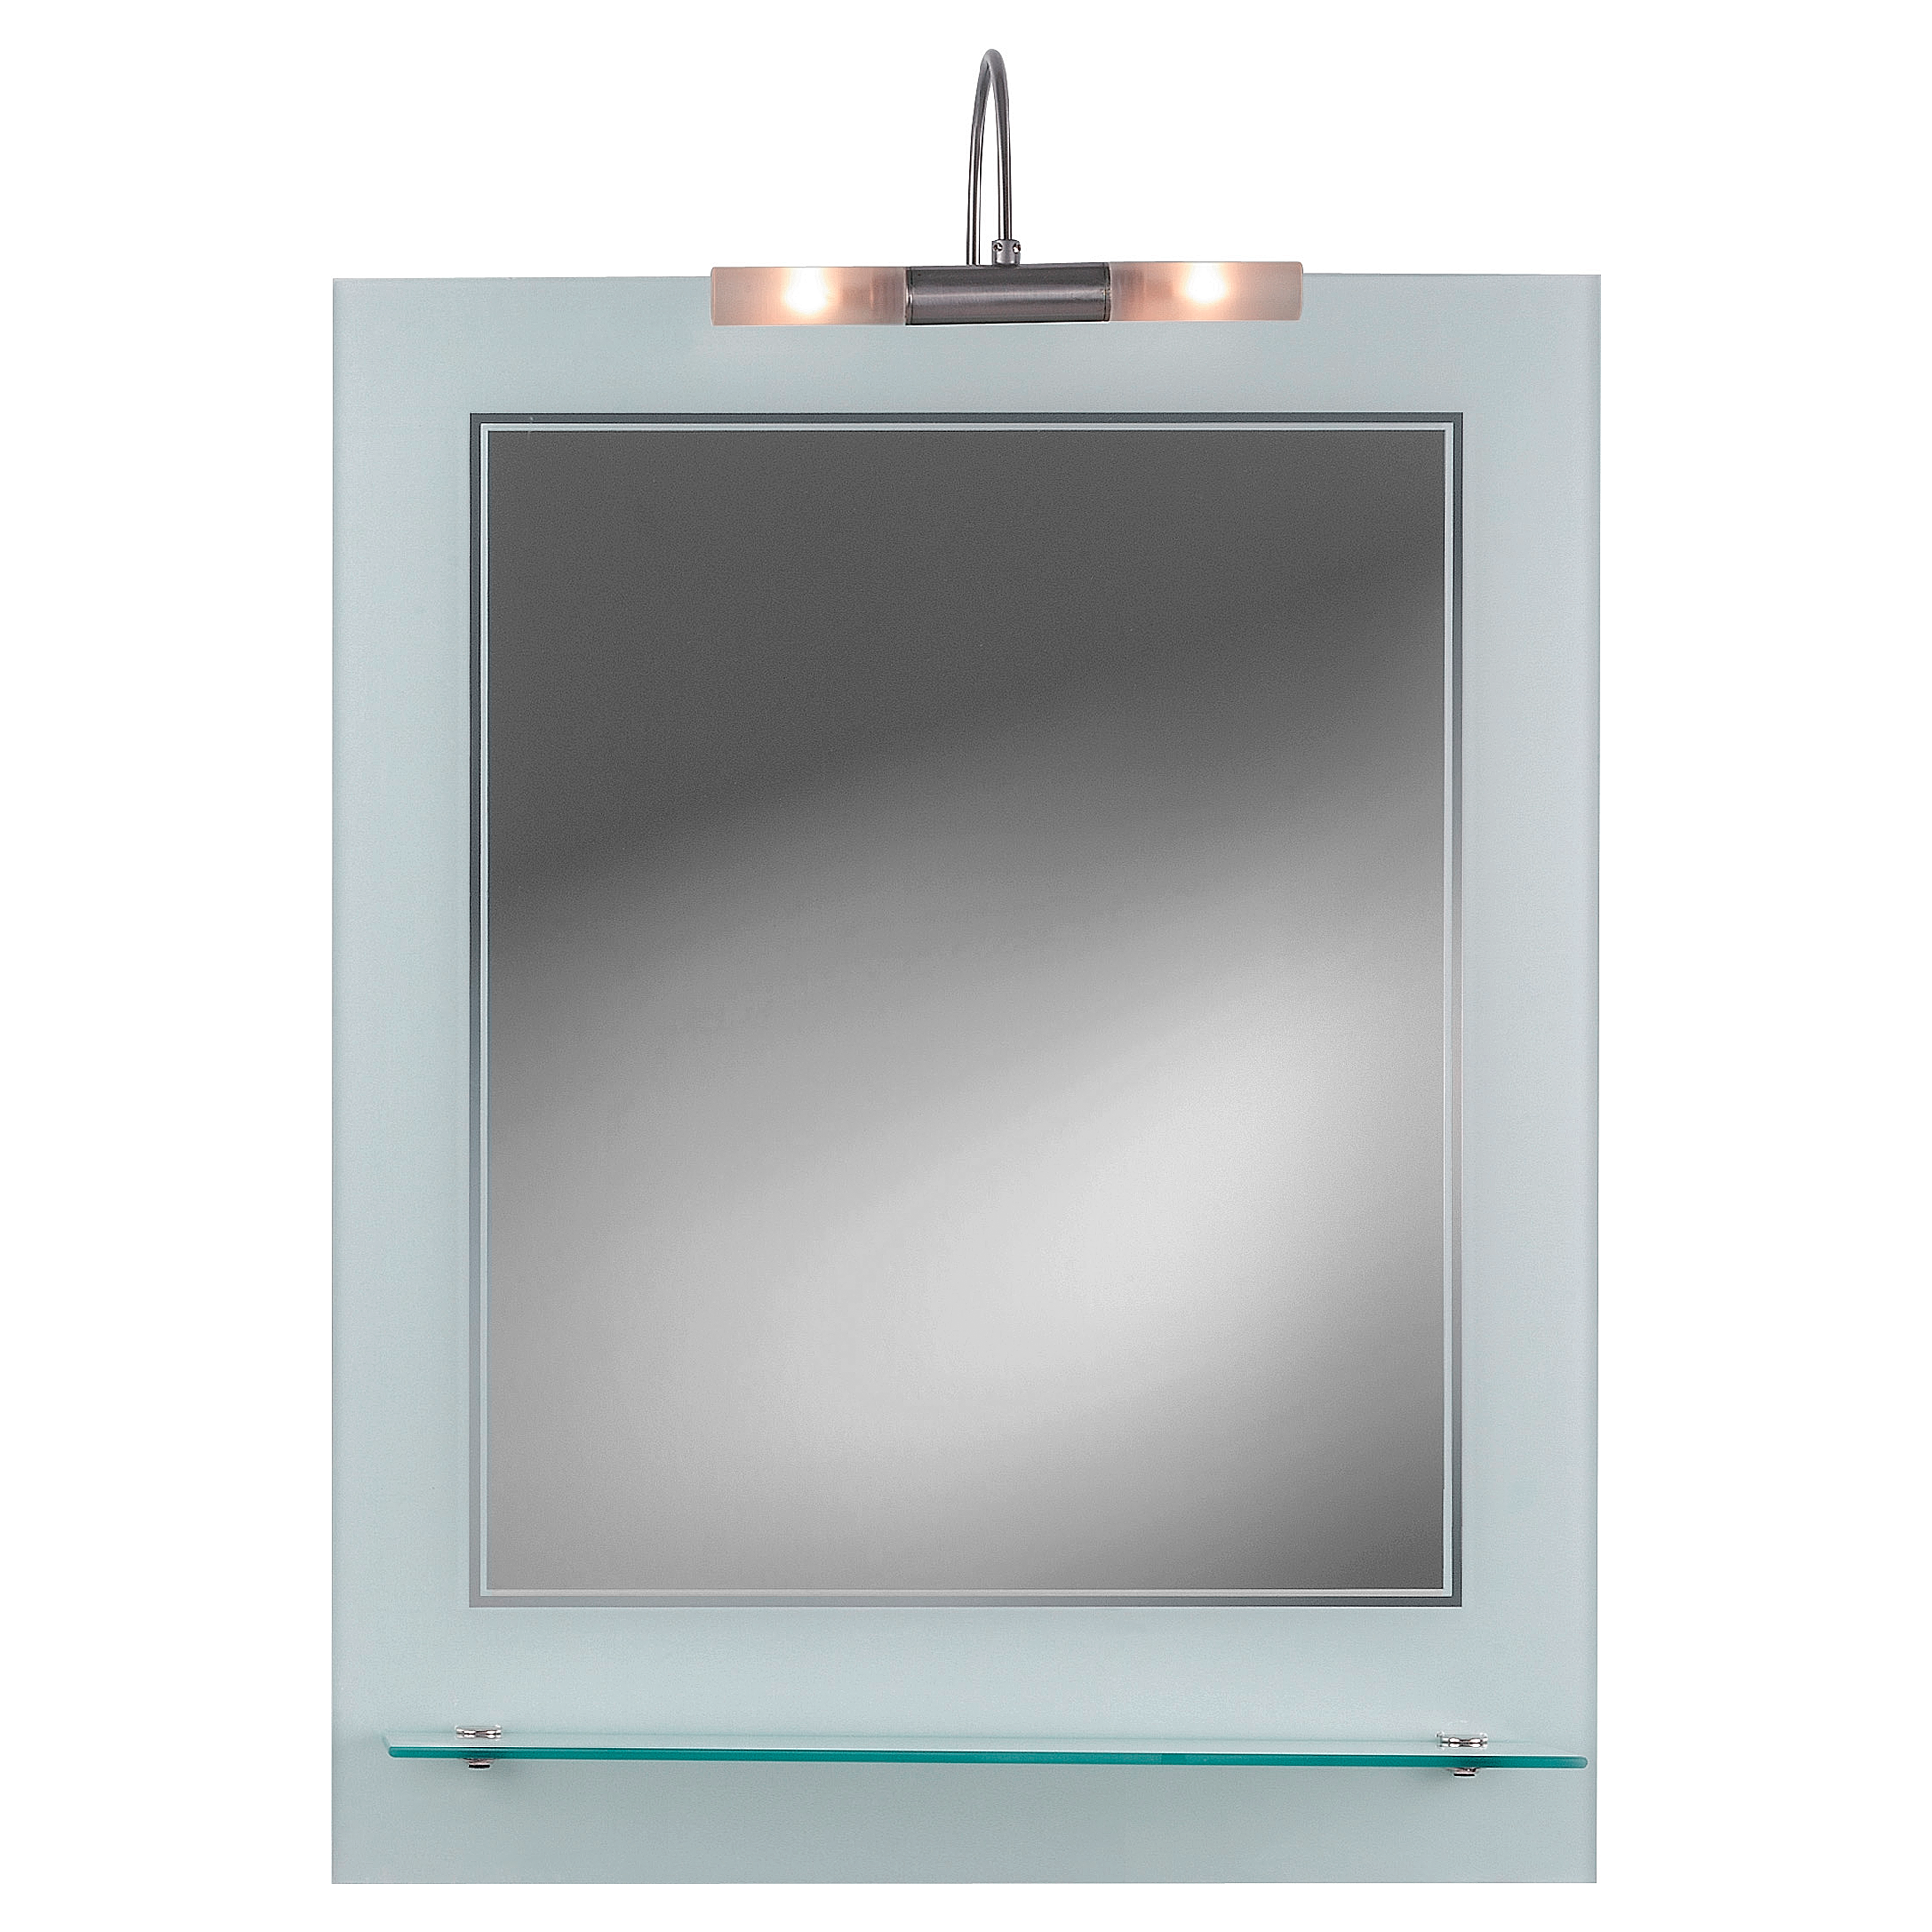 Lichtspiegel Trendline 5 mit A 55 x 70 + product picture